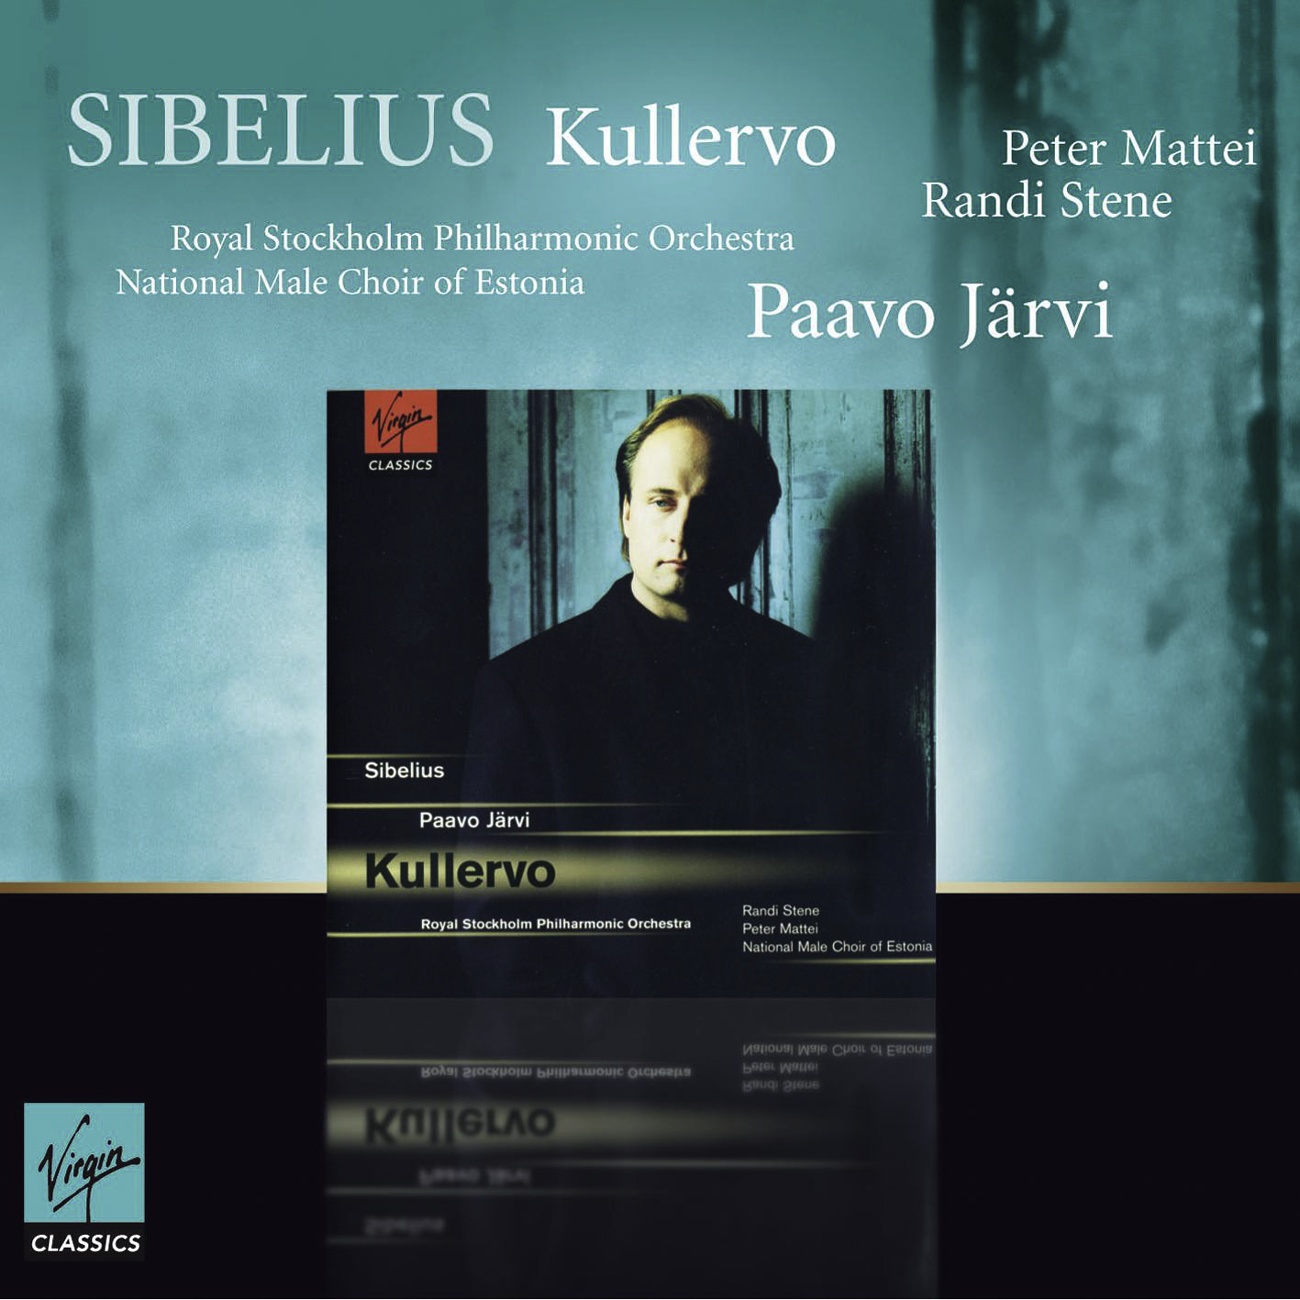 Kullervo - Symphonisches Gedicht, Op. 7, fur Soli, Chor und Orchester (Kalevala): V - Kullervos dod (Kullervo's Death) - Andante